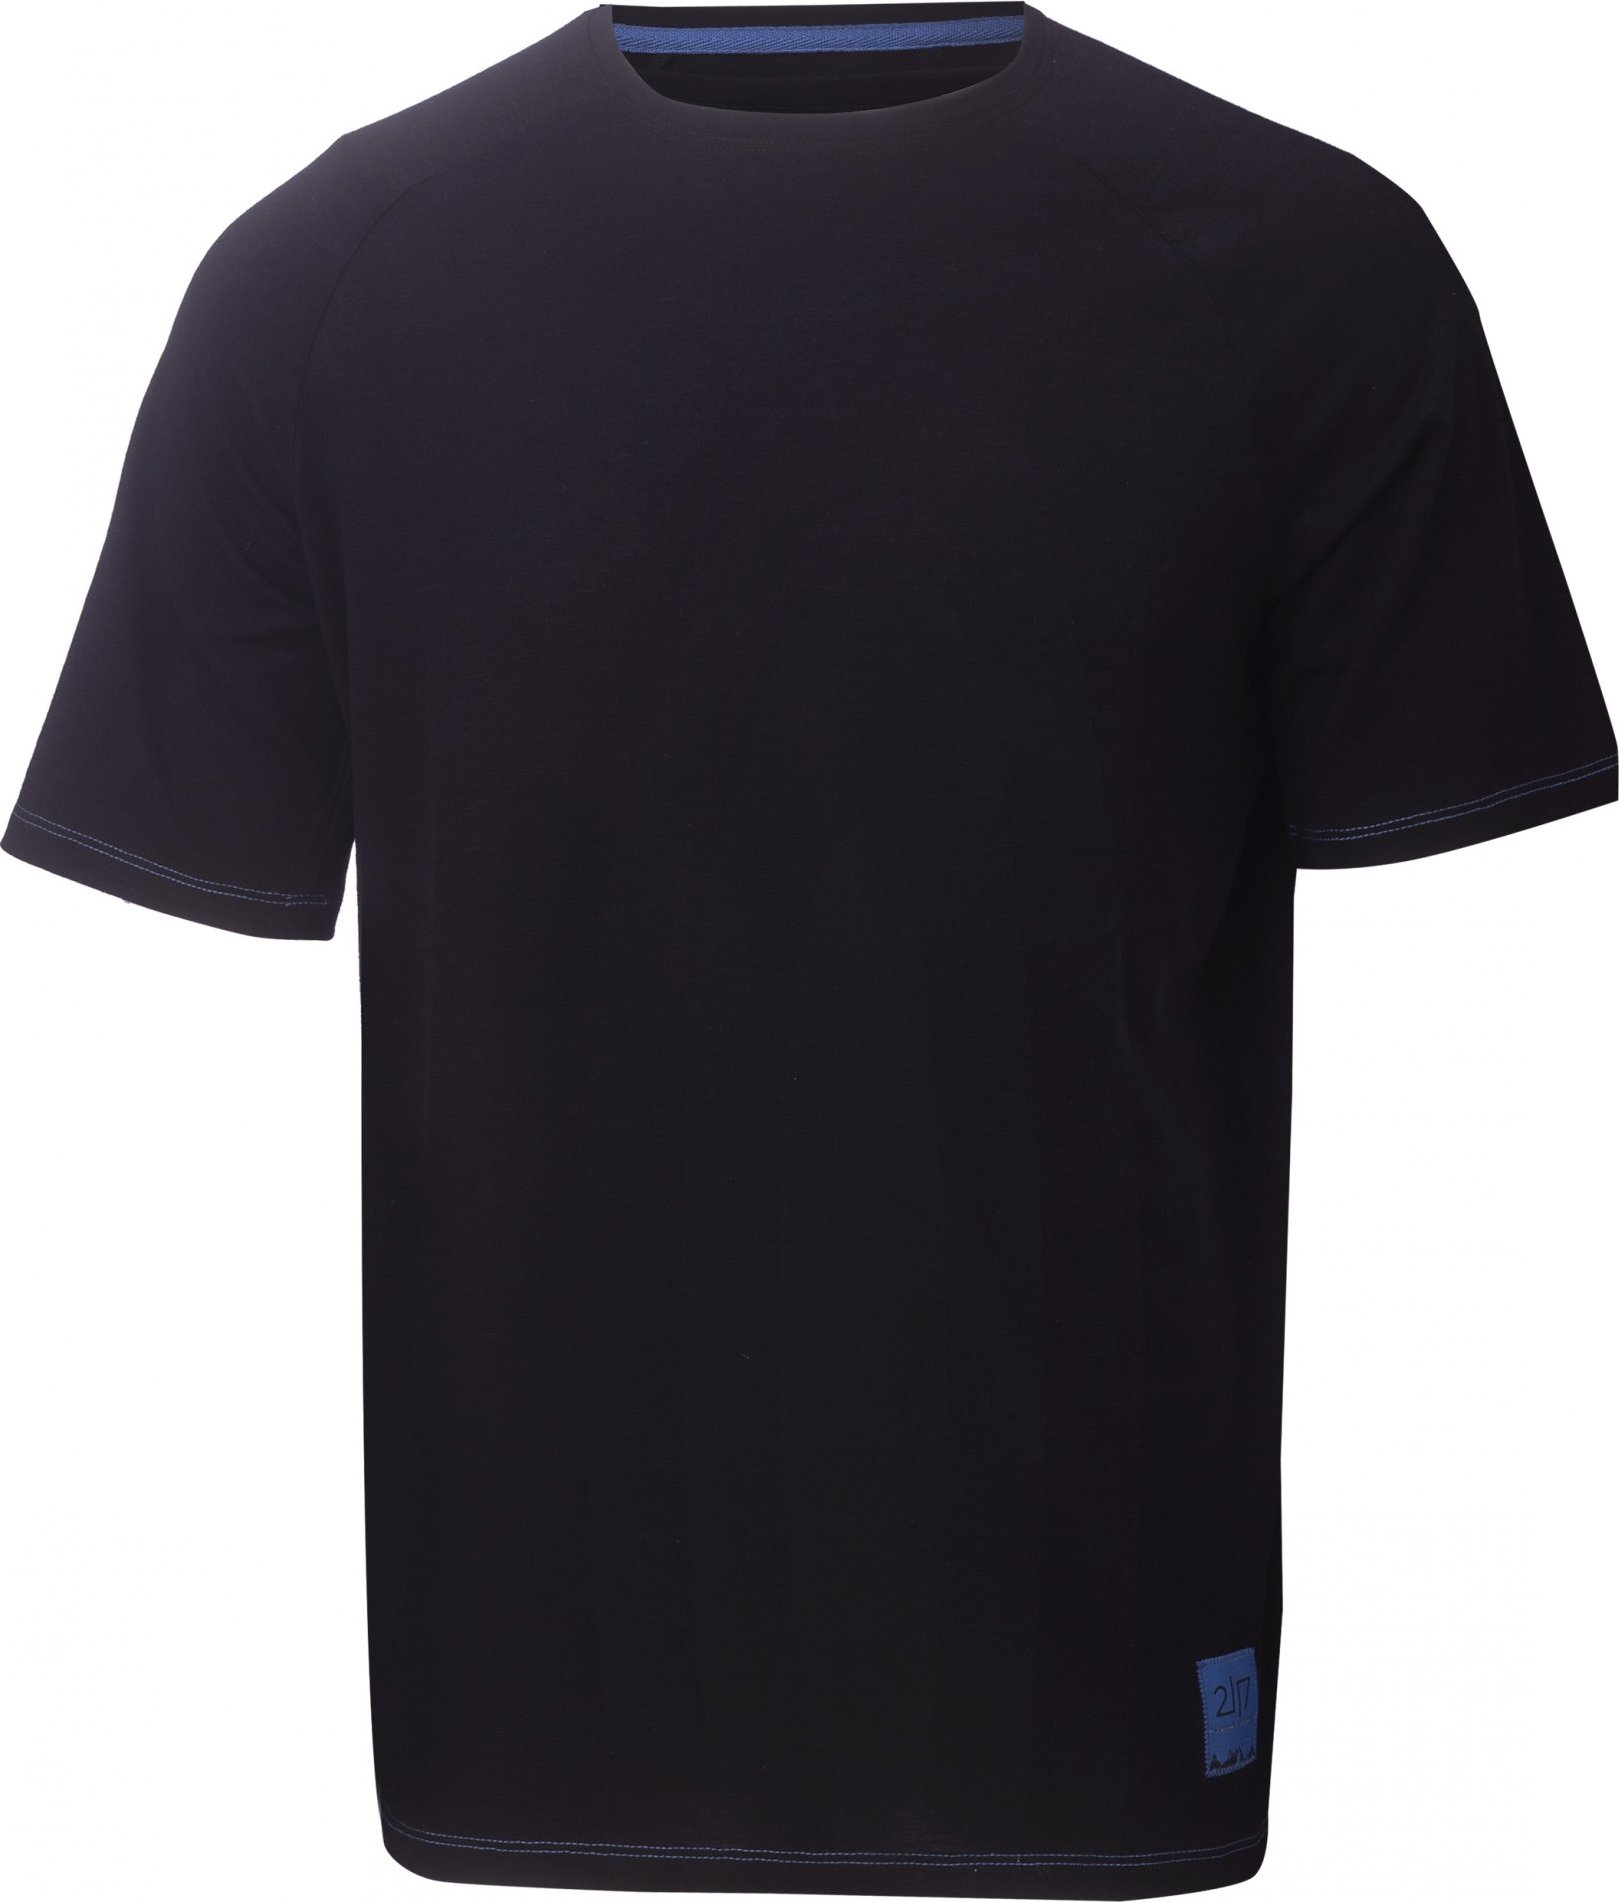 Pánské funkční triko s krátkým rukávem 2117 Linghem černé Velikost: M